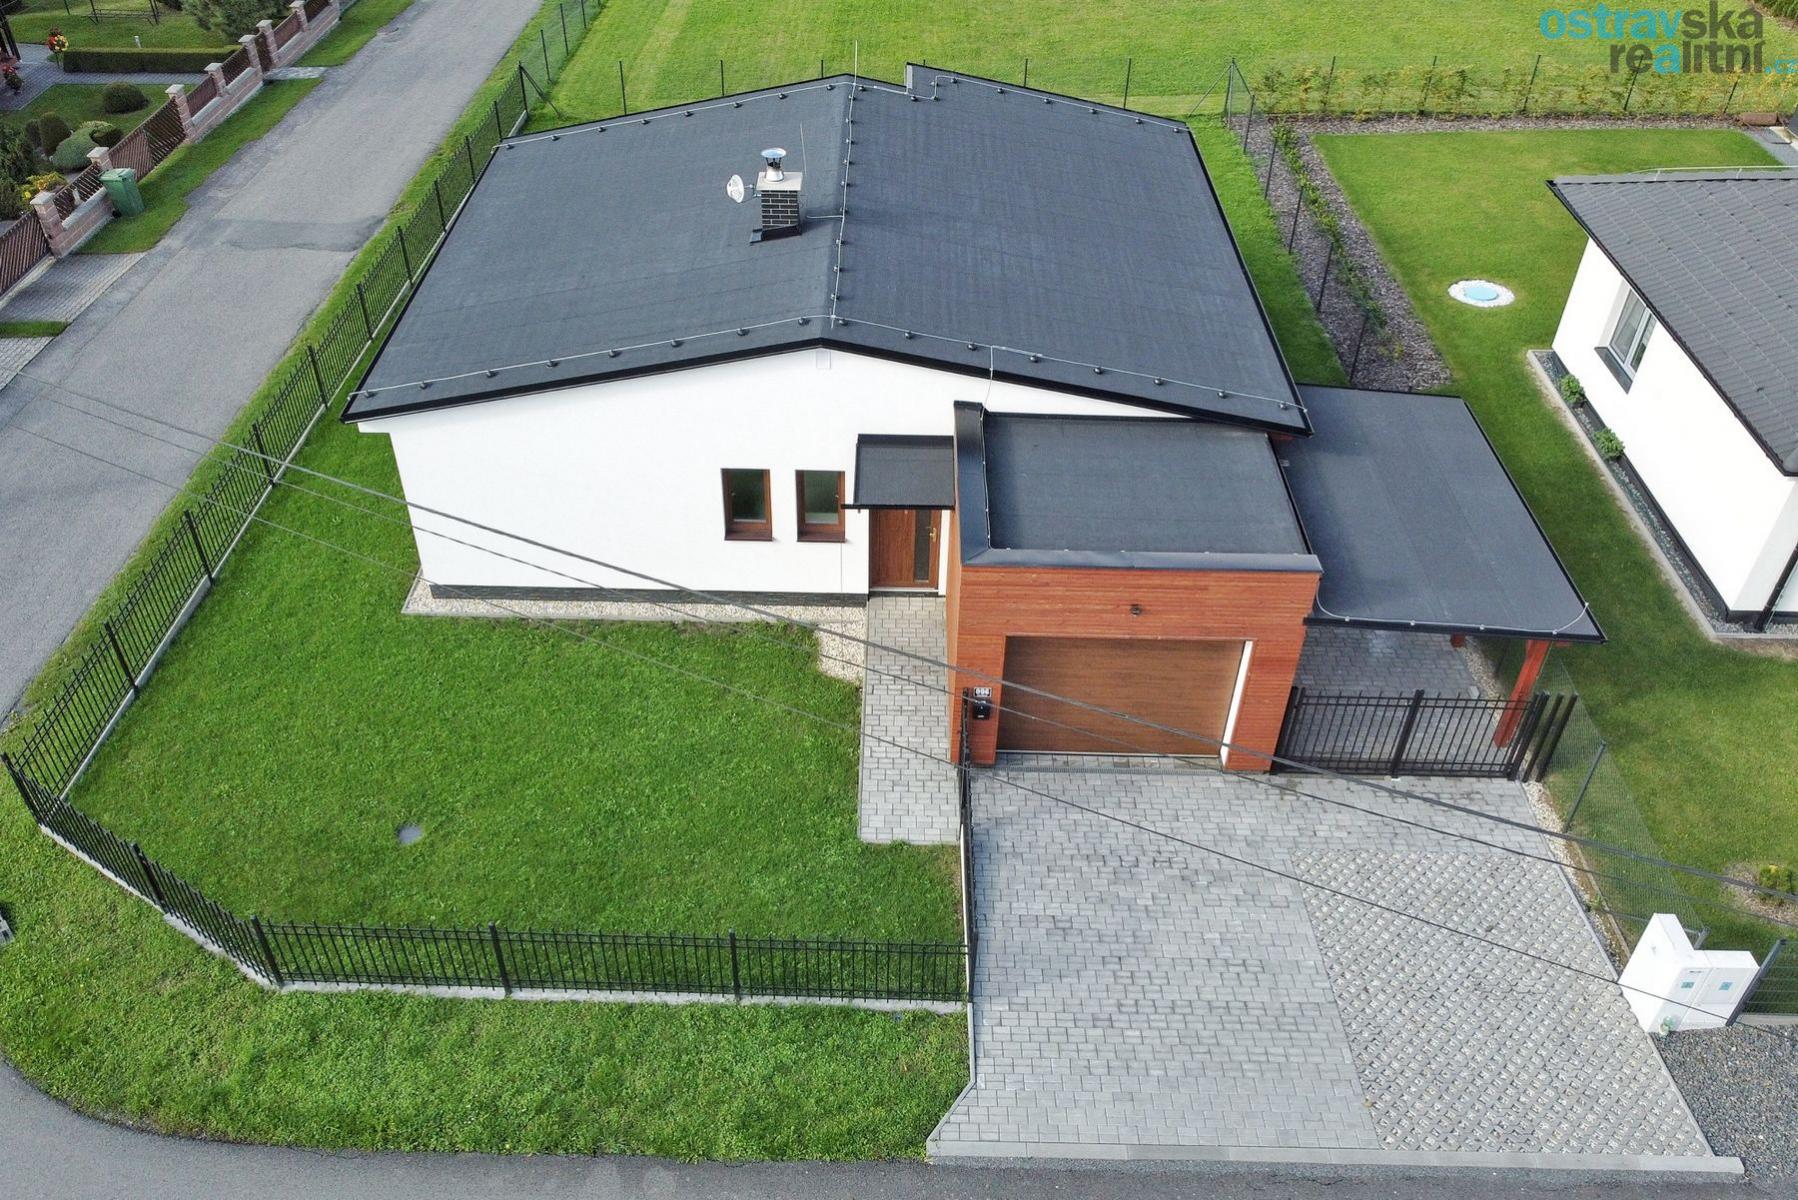 Prodej, dům 4+kk s garáží, Kozlovice, 105m2, zahrada 426m2